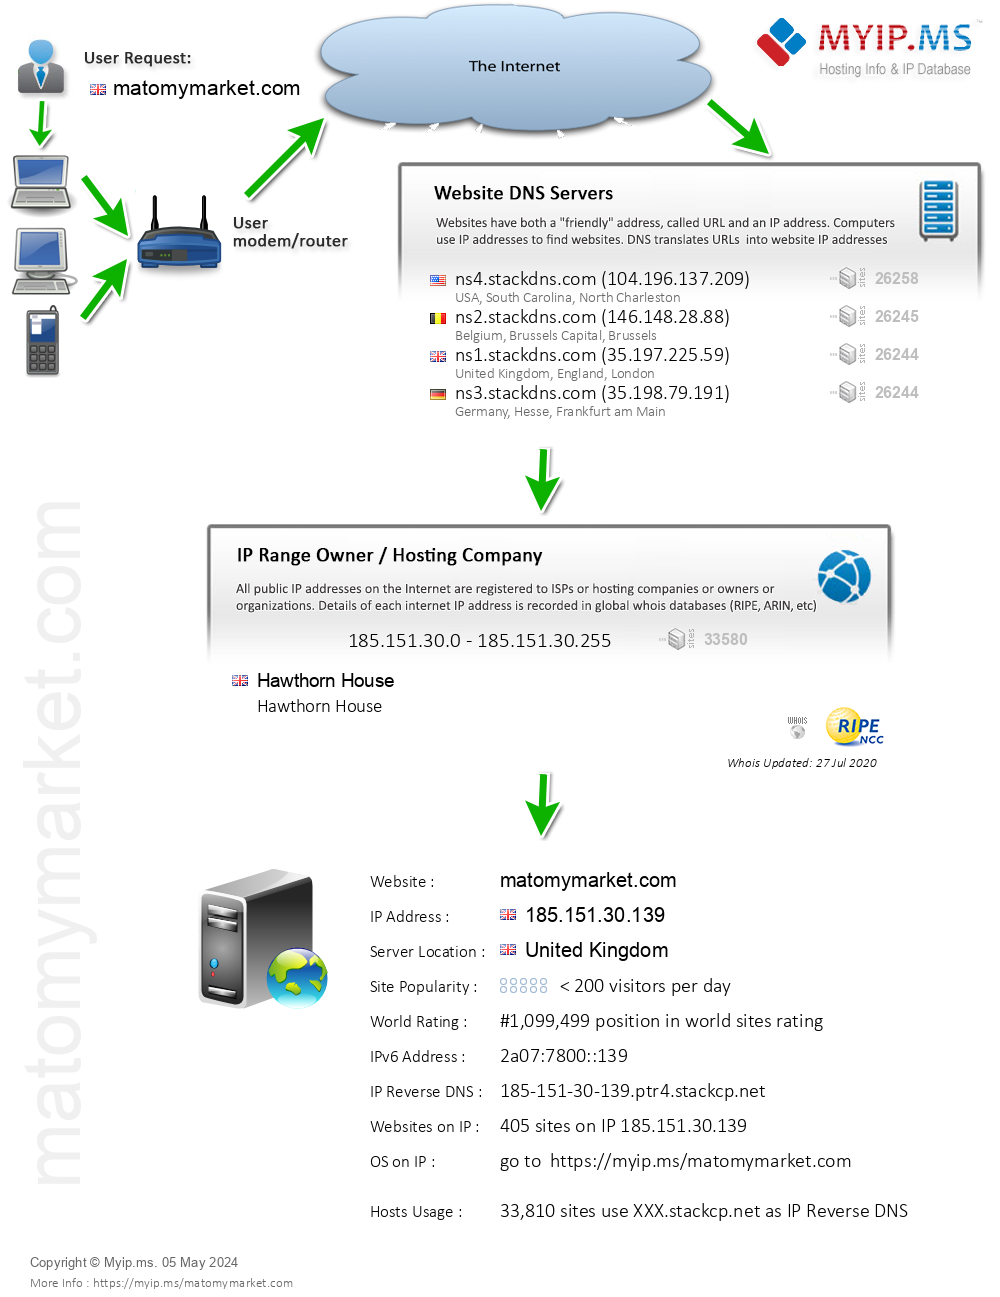 Matomymarket.com - Website Hosting Visual IP Diagram